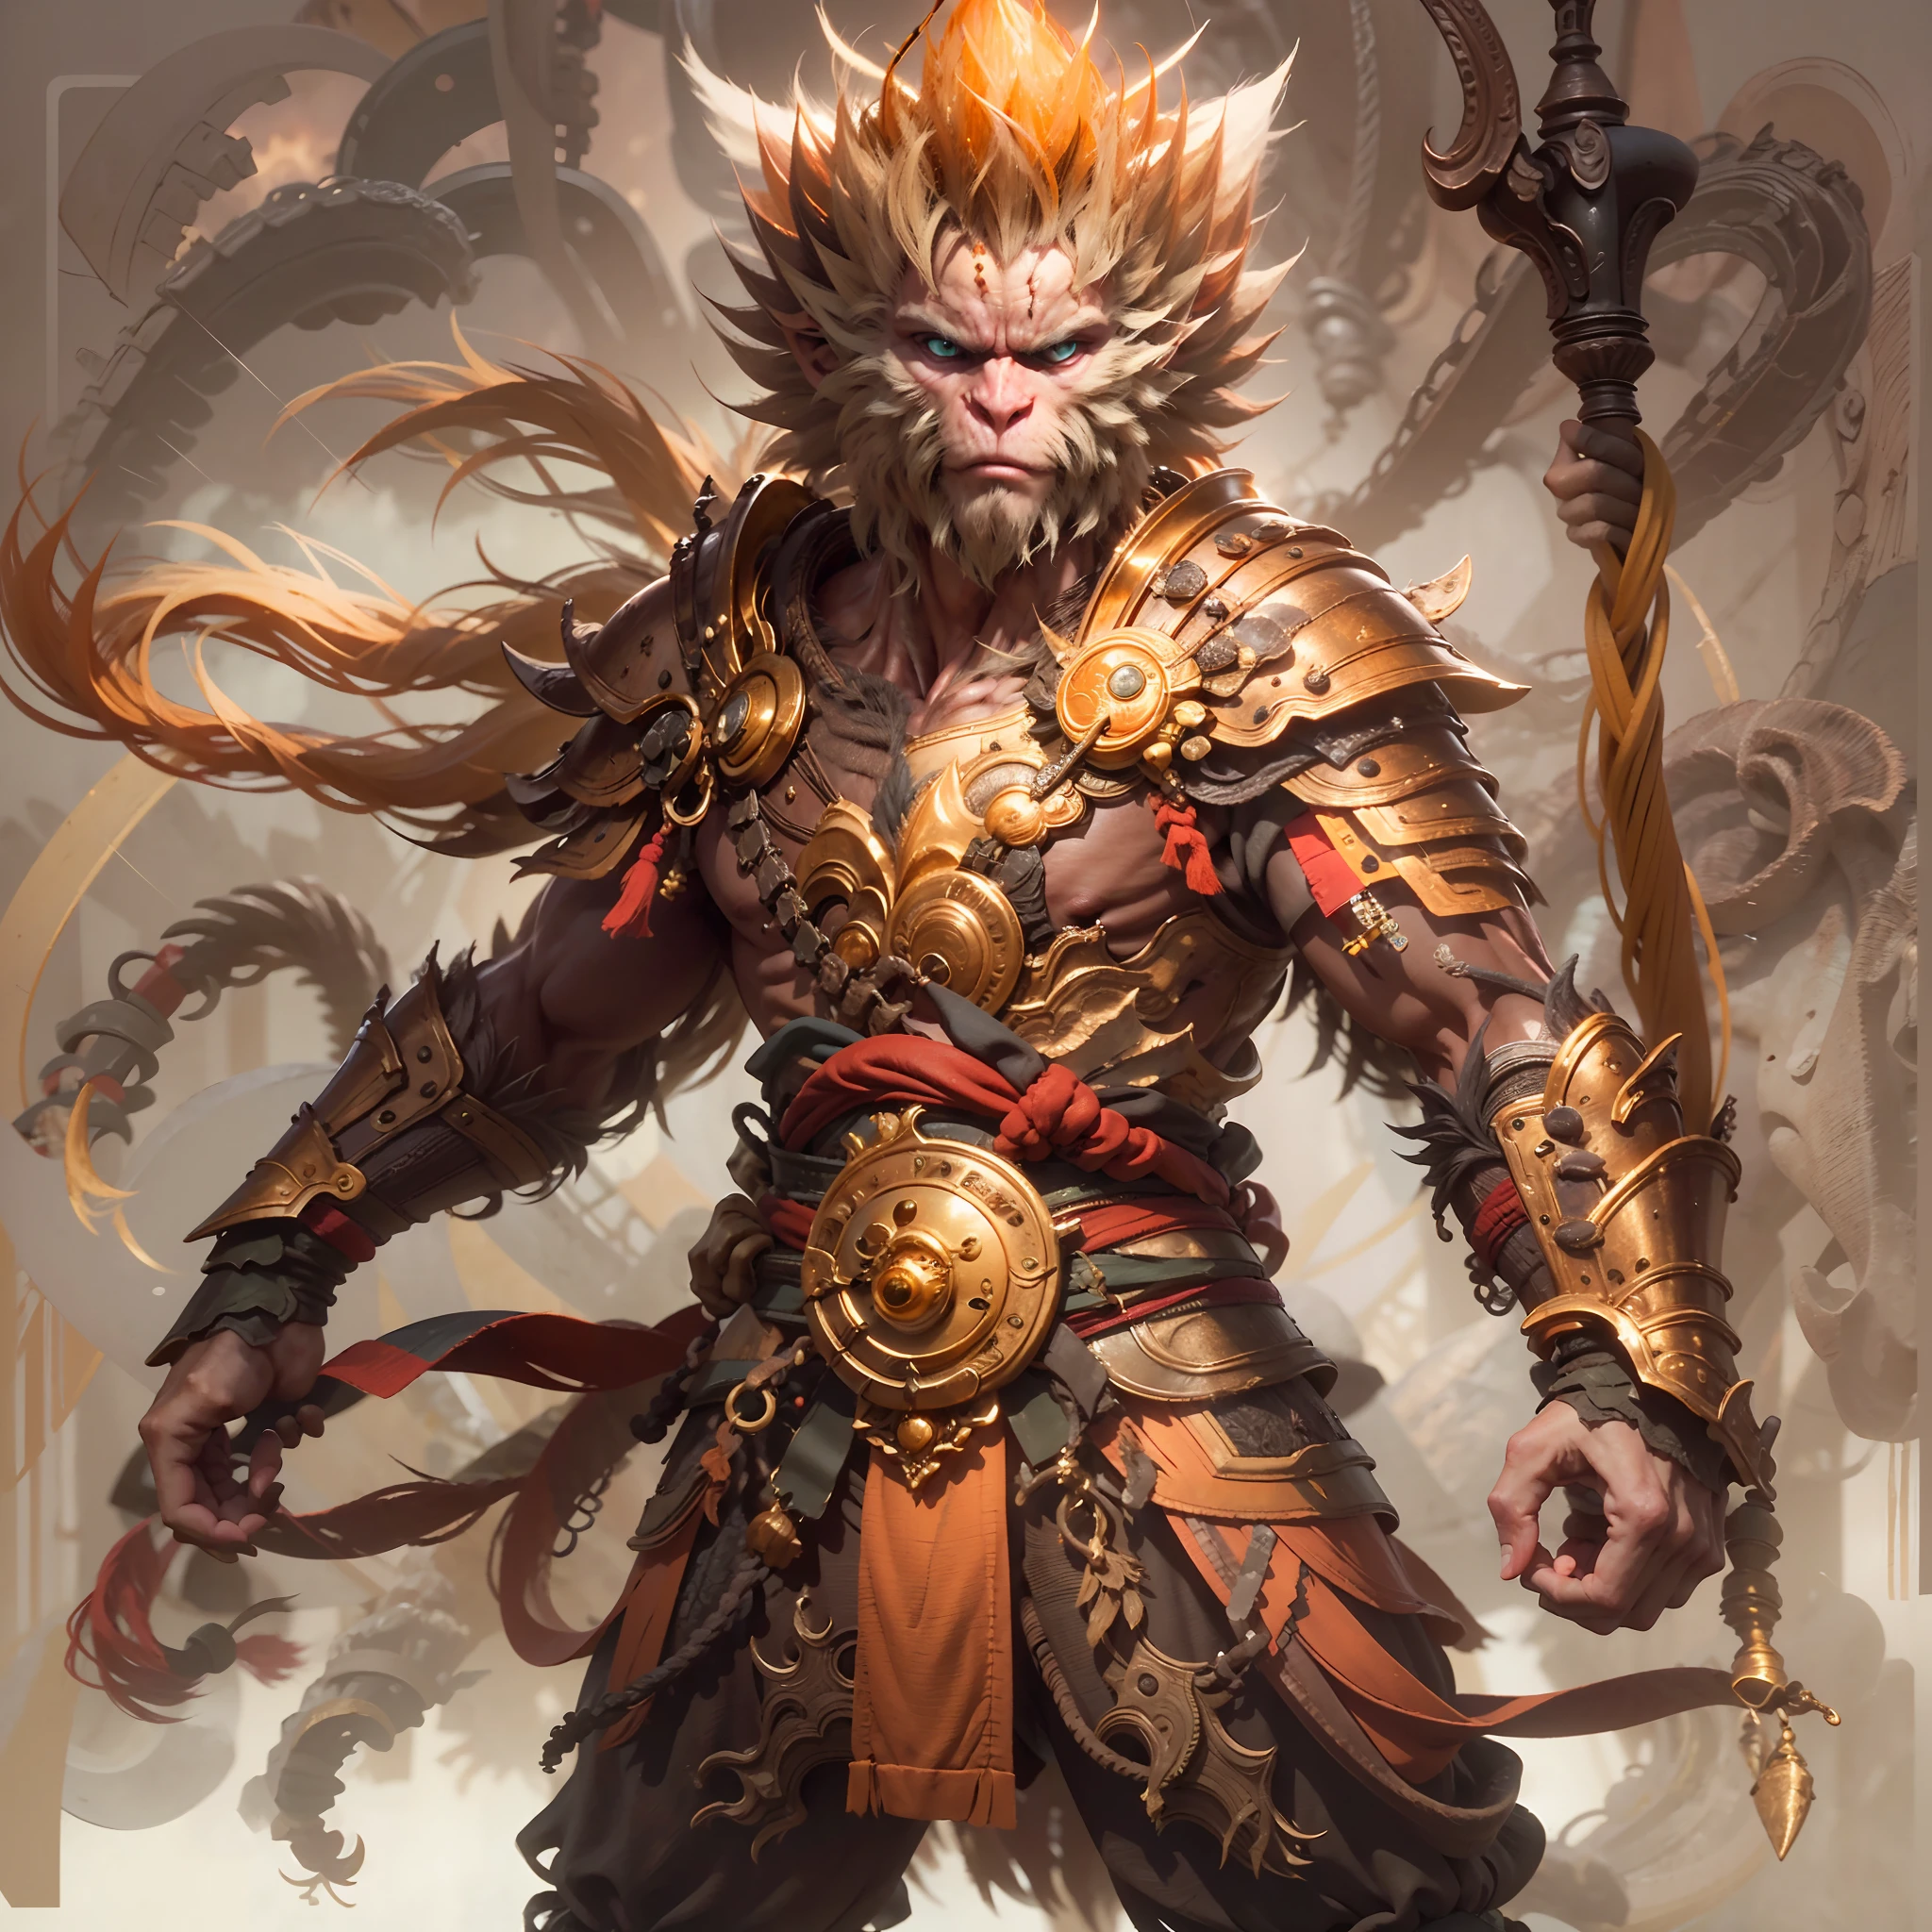 (主部件, 最好的细节), 神秘生物, sun wukong, 金色的头发, 使用黄金圈, 穿着传统服饰盔甲, 将手杖放在肩上